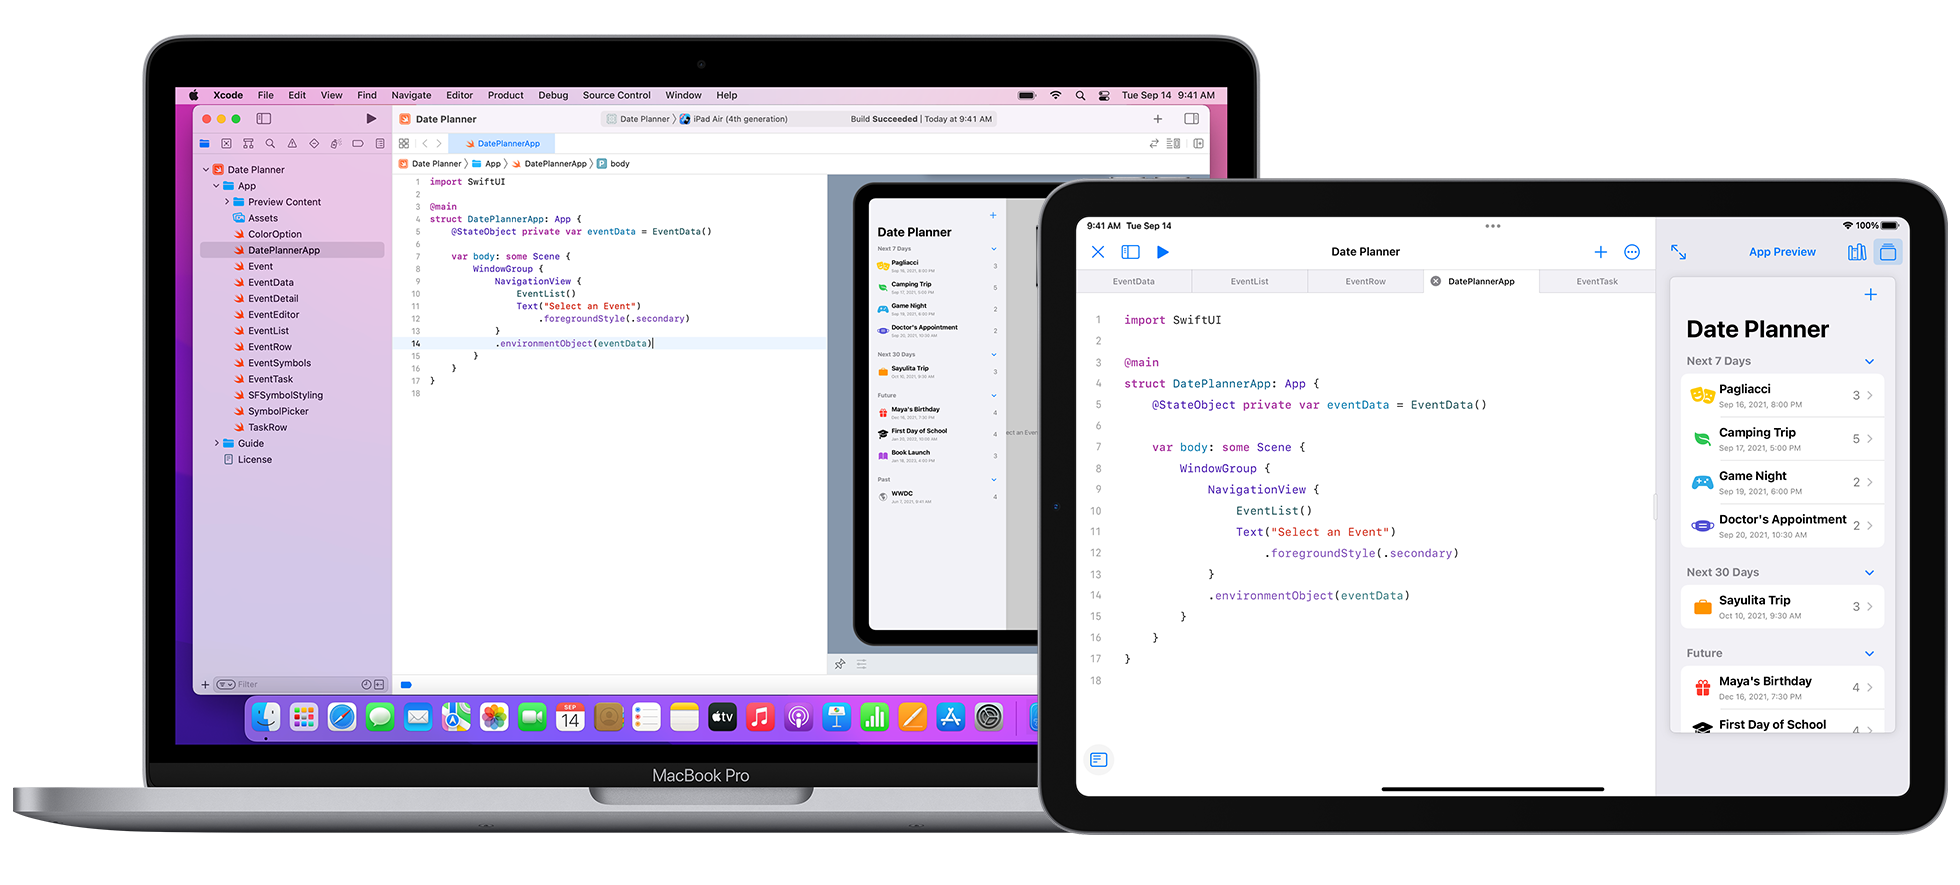 Mac 和 iPad 正在使用 Swift Playground 的跨设备共享代码功能。